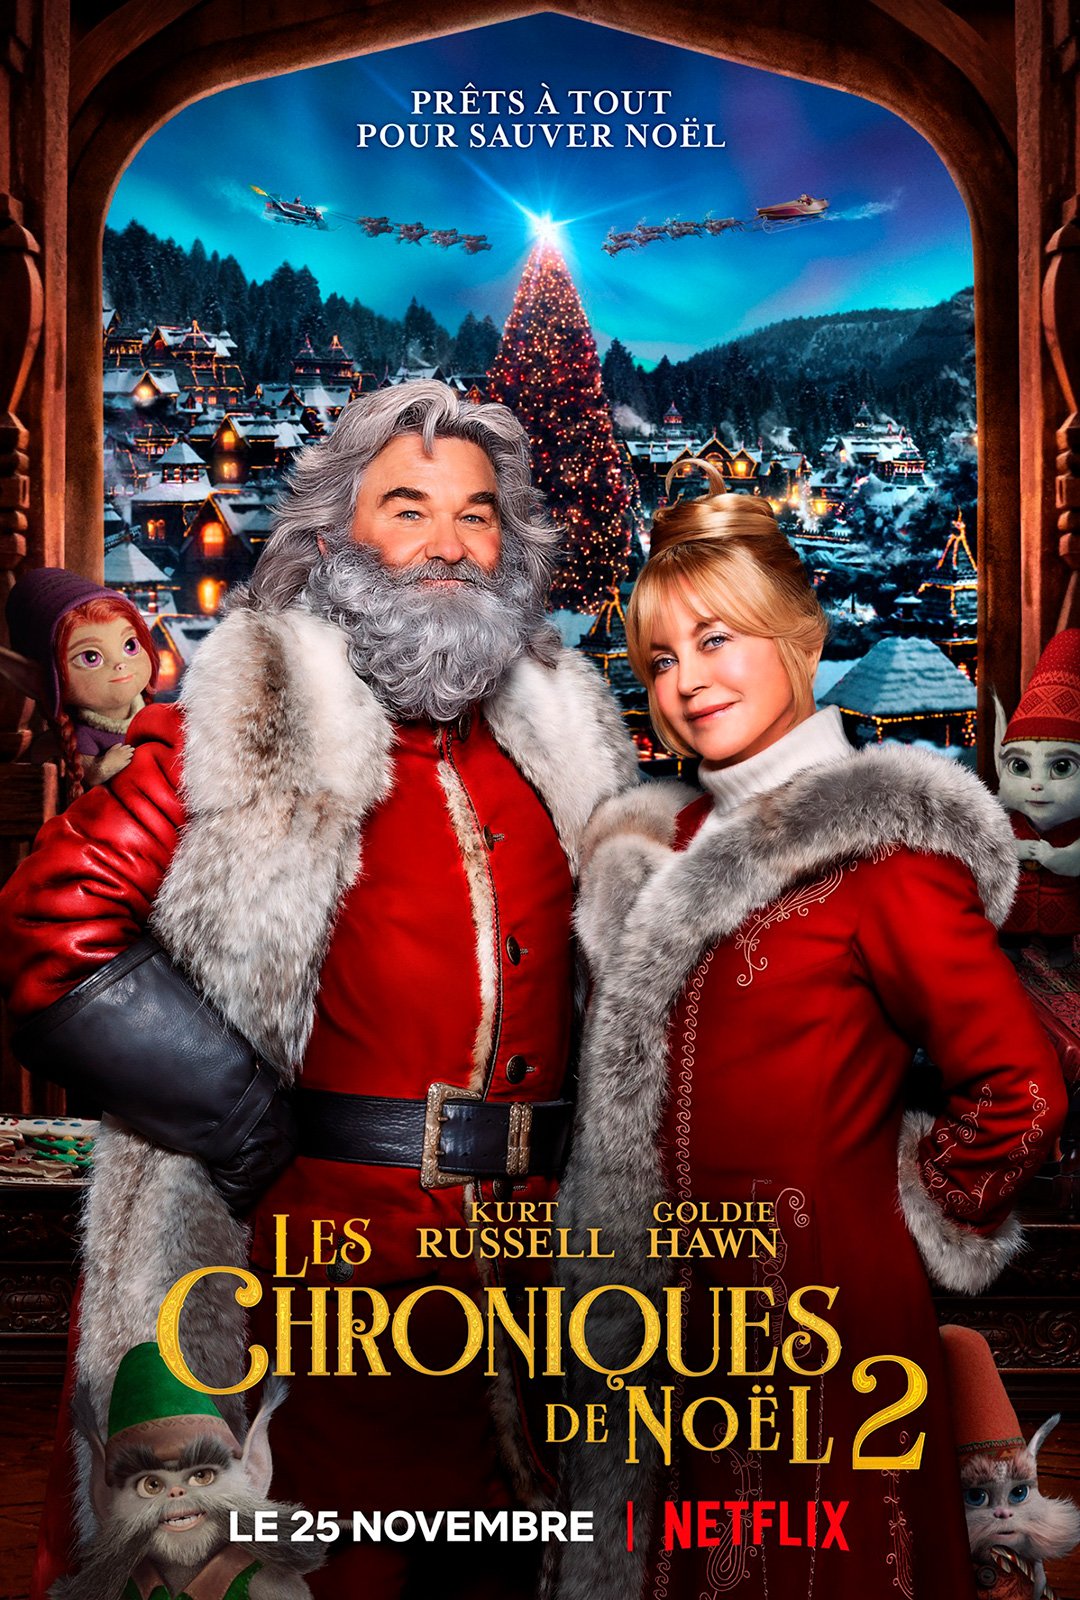 Les chroniques de Noël 2 - film 2020 - AlloCiné